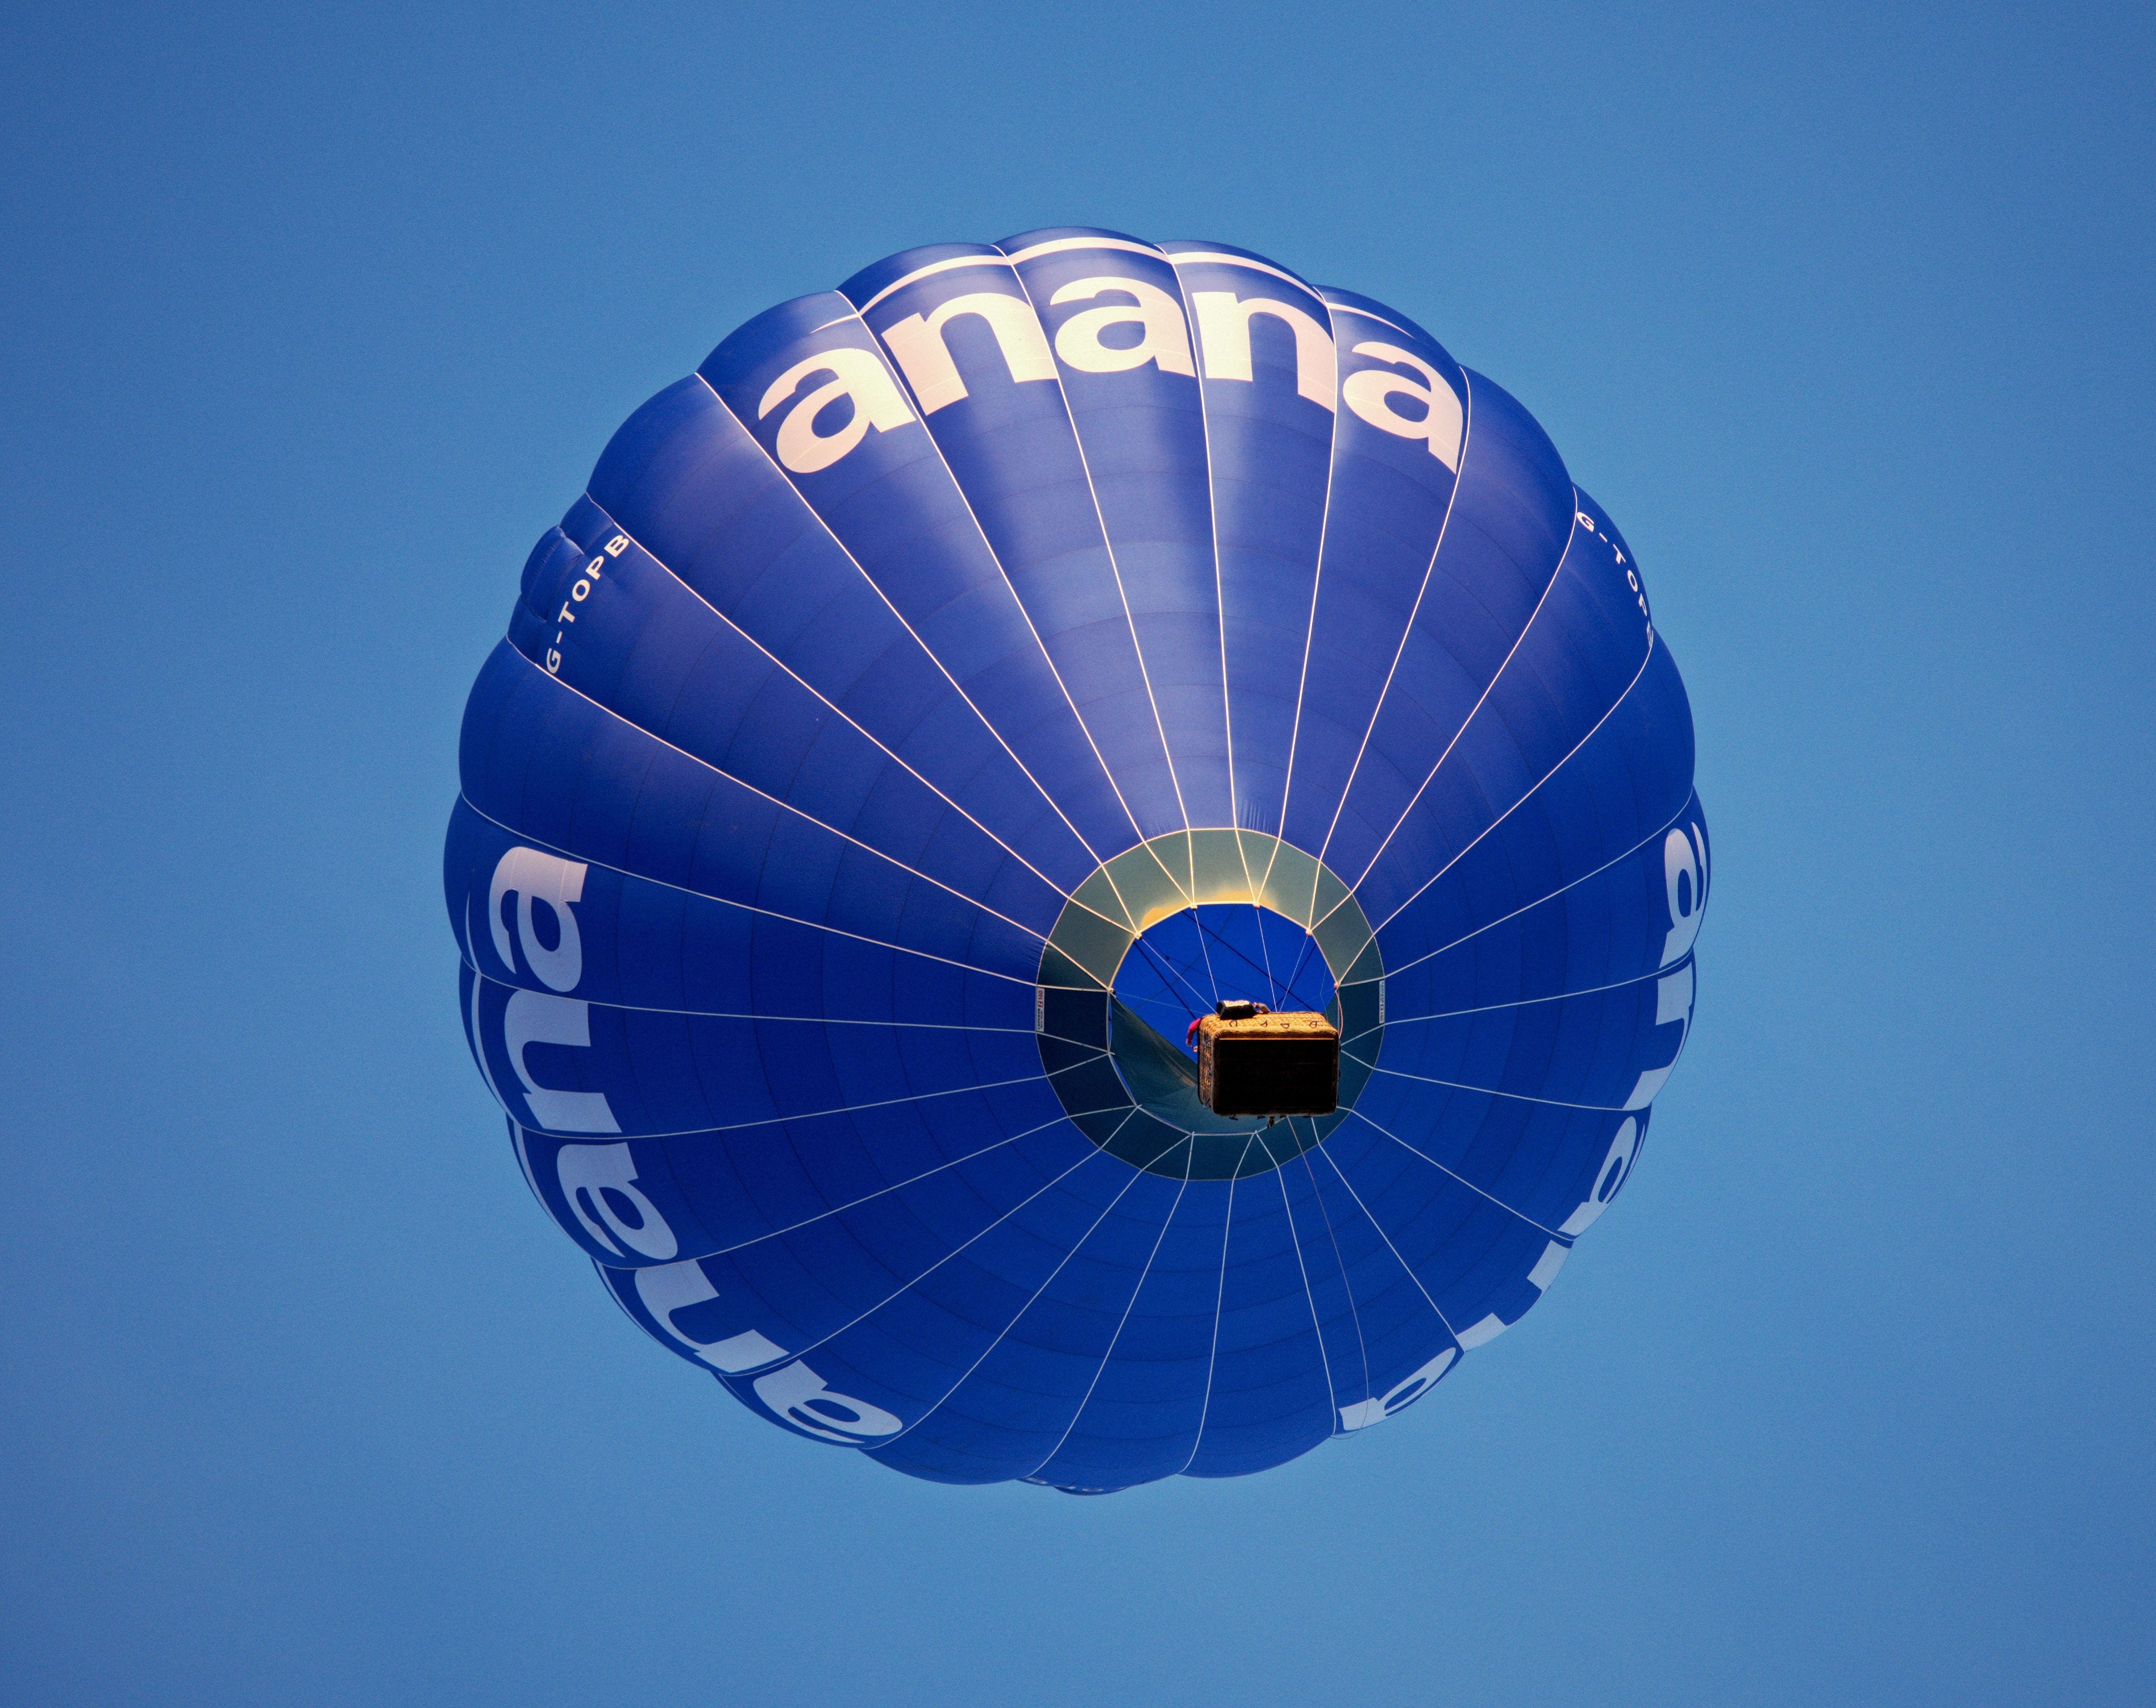 blue and white hot air balloon